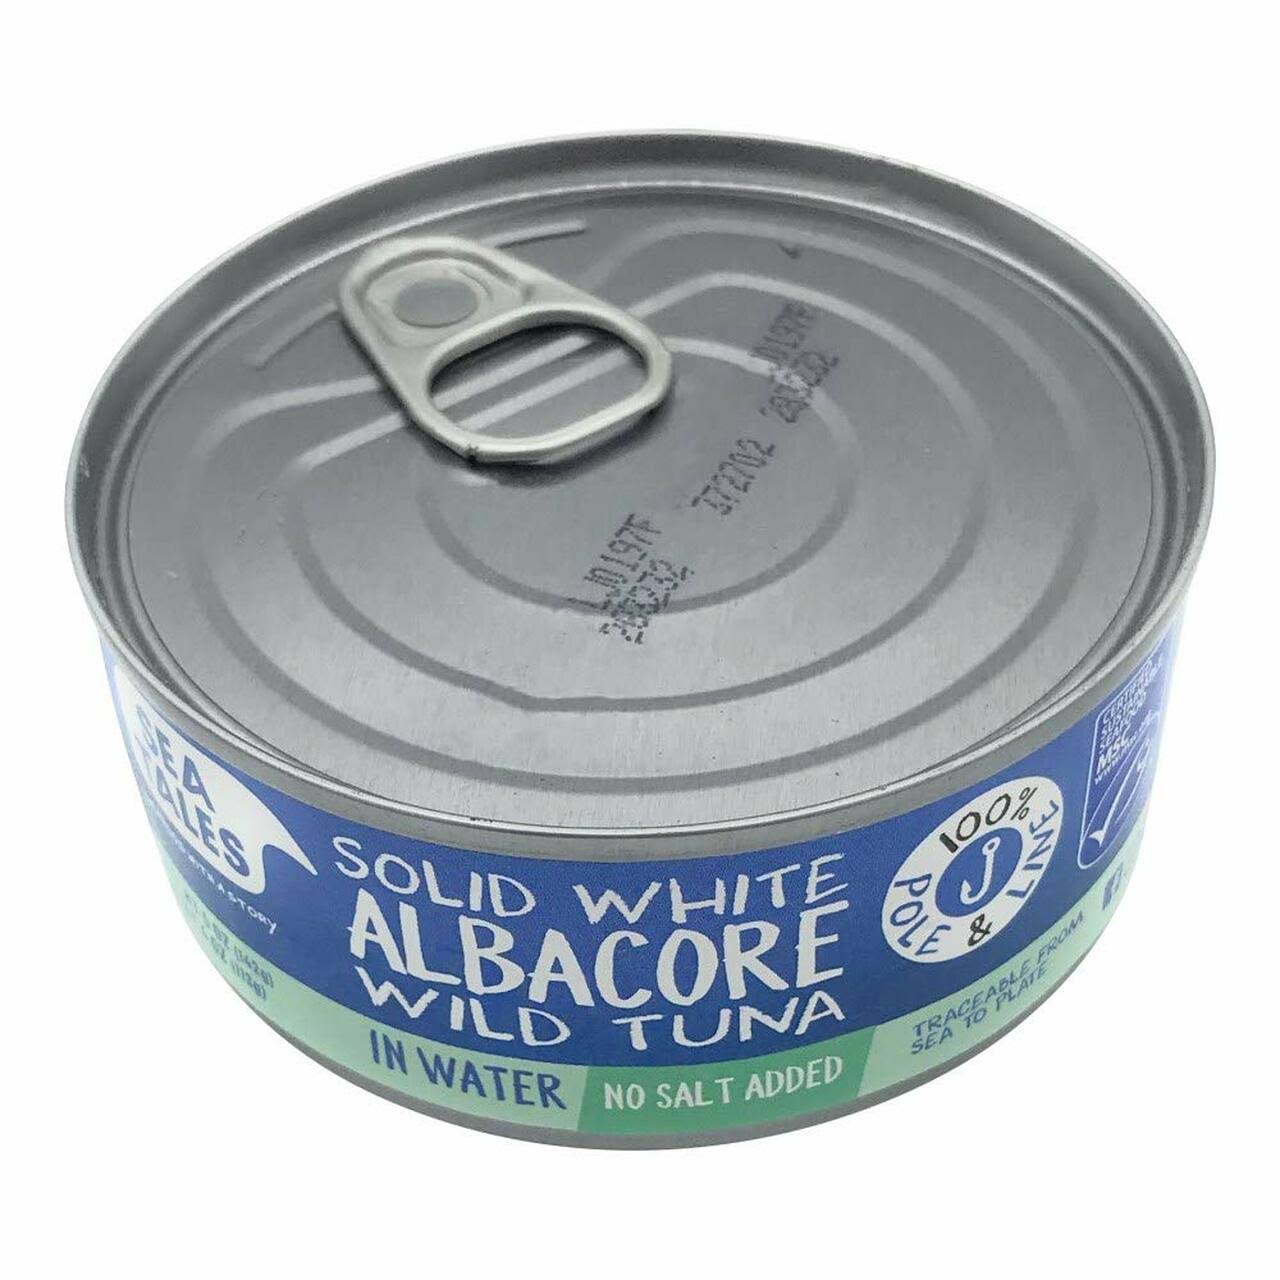 Sea Tales Tuna in Water, Albacore, Solid White - 5 oz